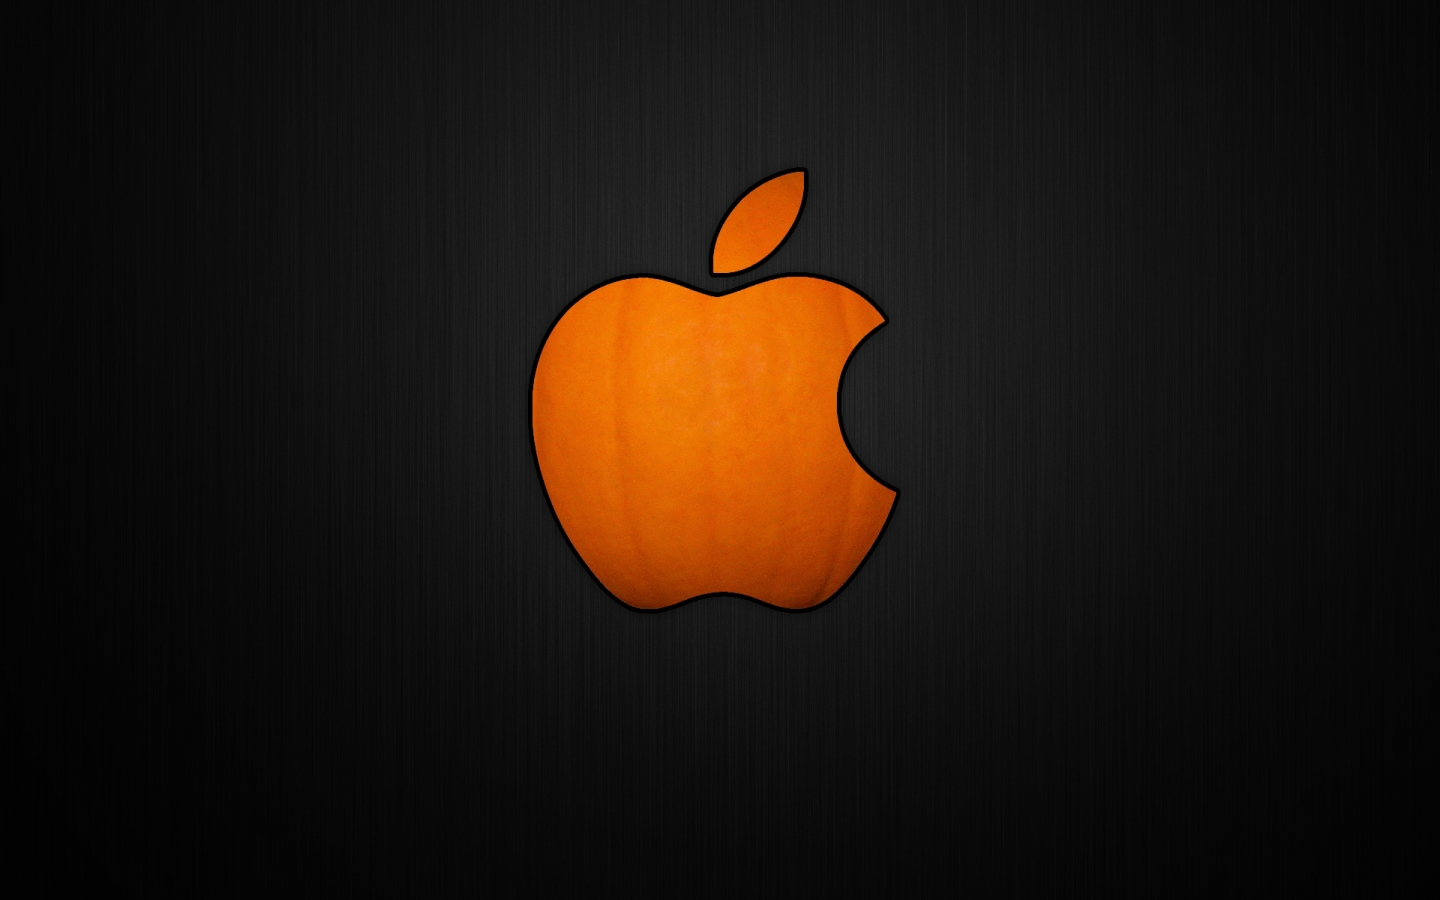 Cool Pumpkin Apple for 1440 x 900 widescreen resolution